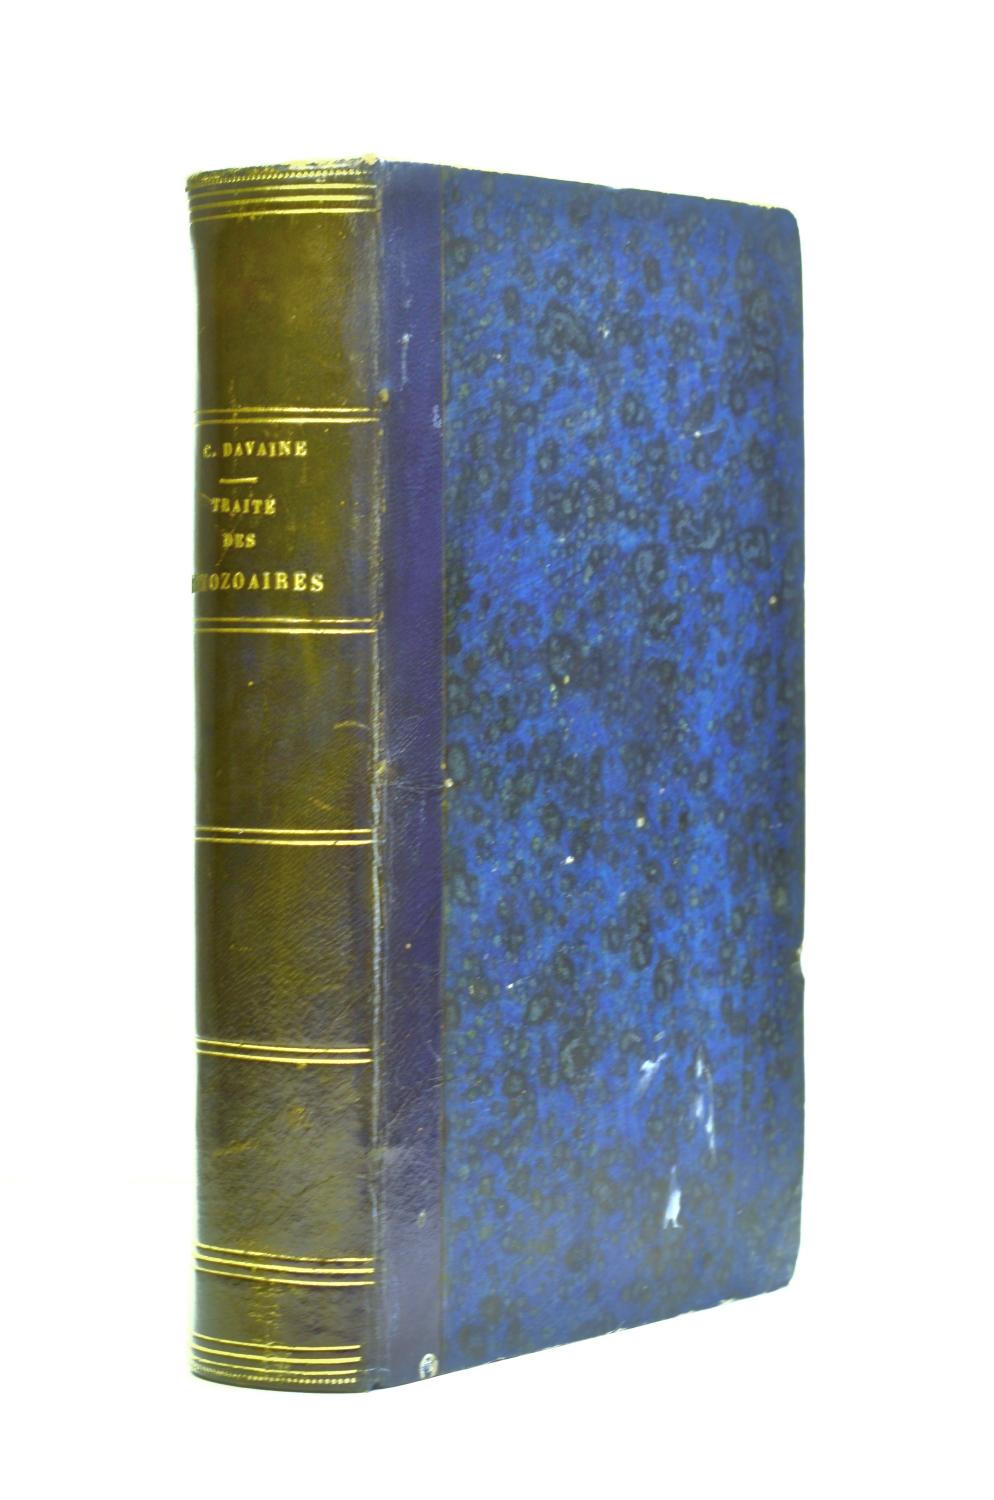 Vialibri Rare Books From 1860 Page 185